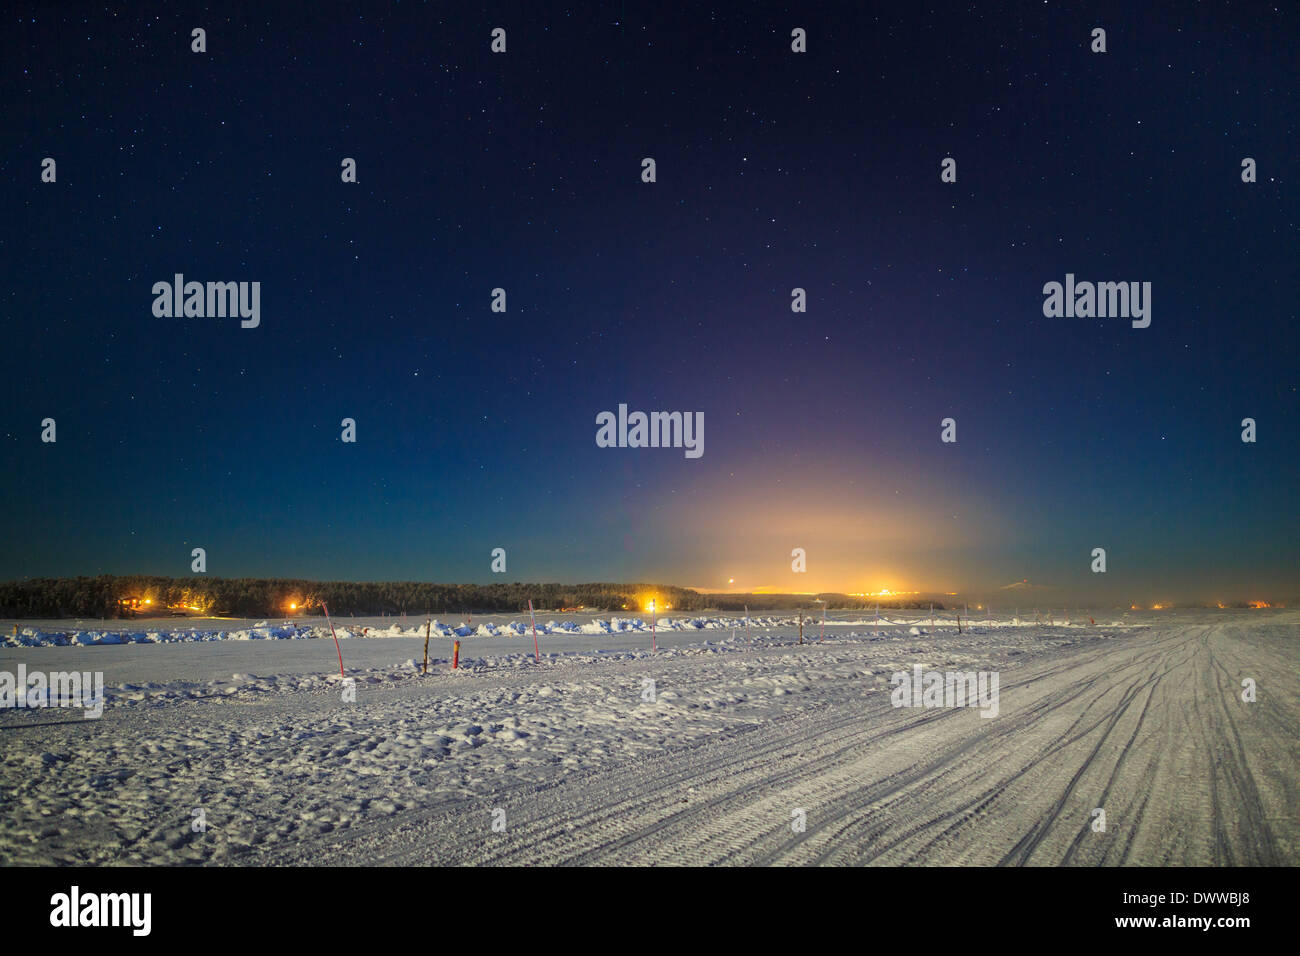 Coucher de soleil sur le paysage gelé de froid, des températures aussi basses que -47 degrés Celsius, Laponie, Suède Banque D'Images